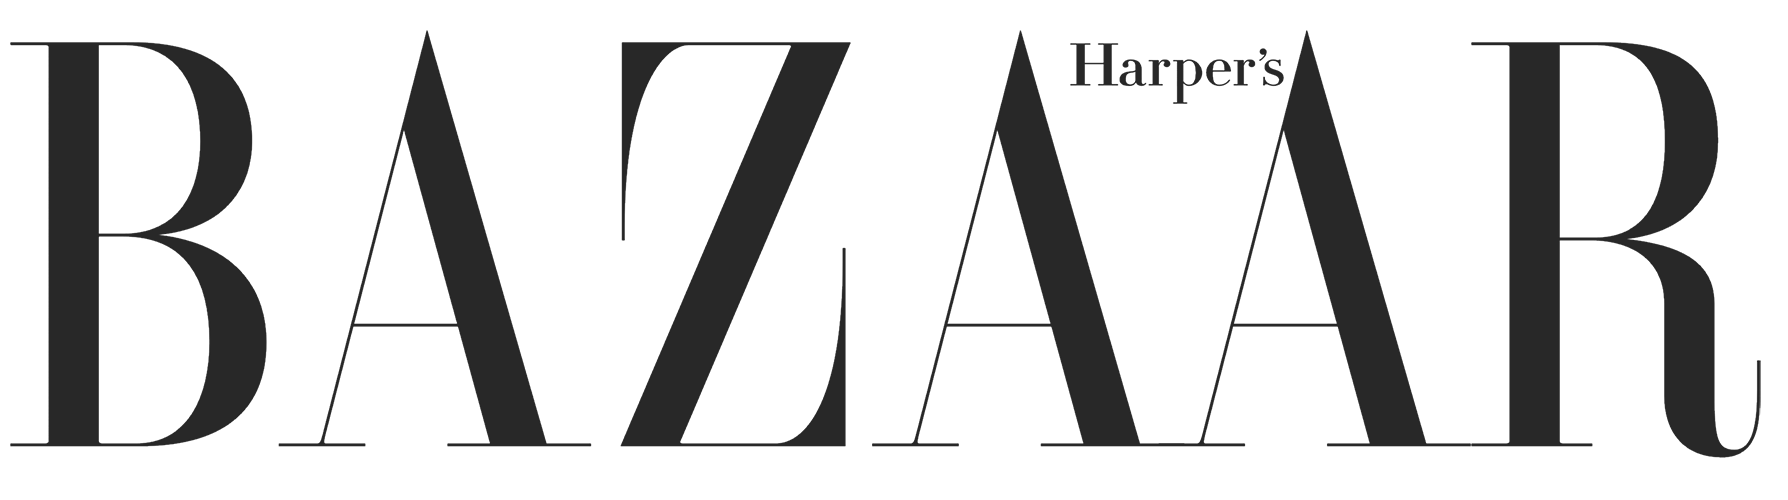 Harpers Bazaar logo